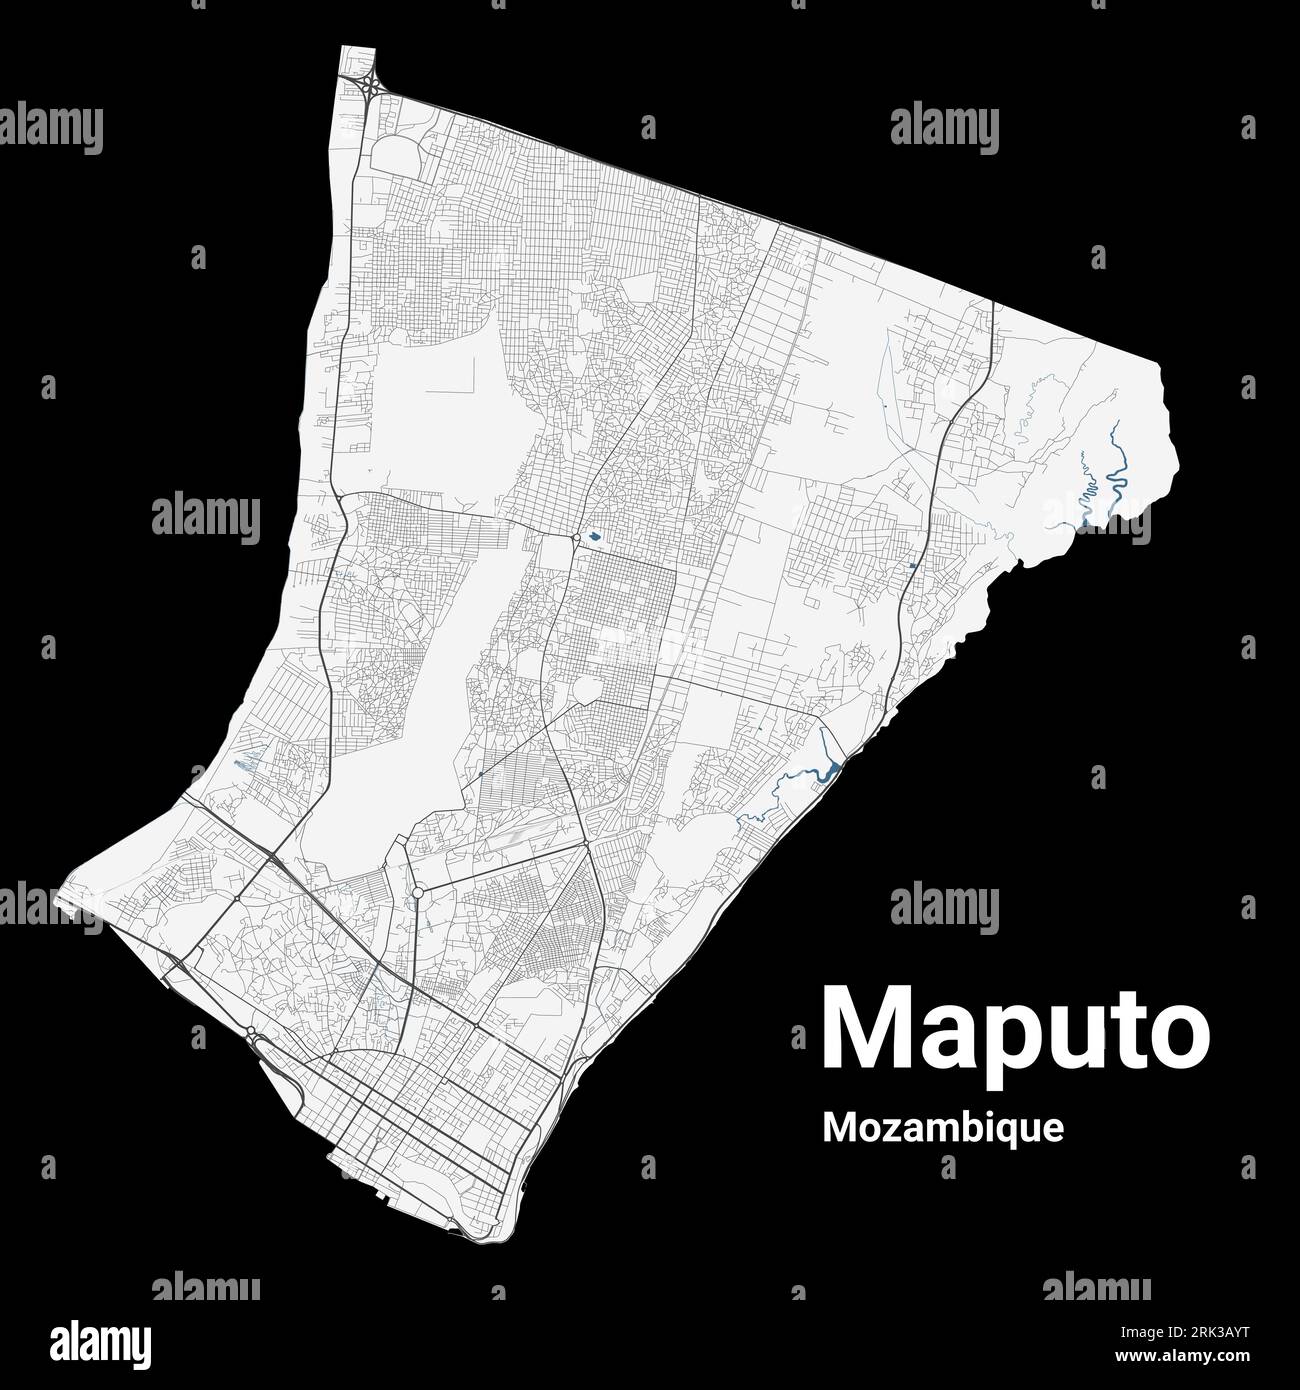 Maputo, Mozambique carte. Carte détaillée de la zone administrative de la ville de Maputo. Panorama urbain. Illustration vectorielle libre de droits. Carte routière avec autoroutes, Illustration de Vecteur